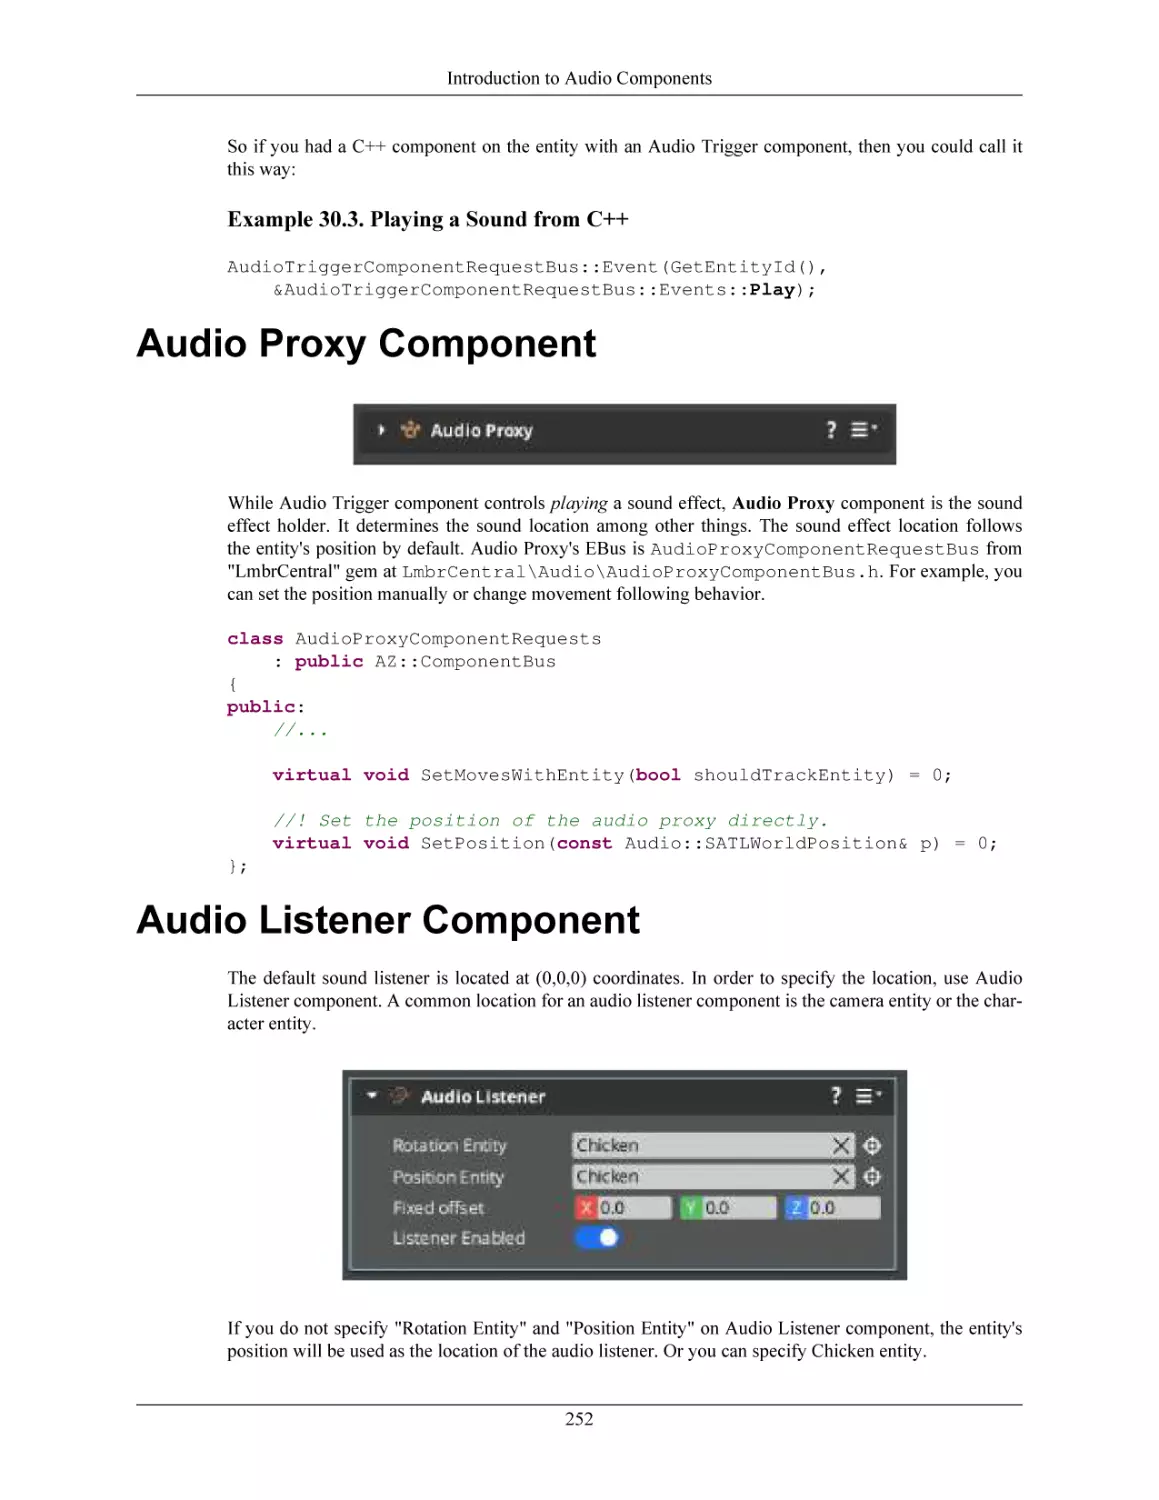 Audio Proxy Component
Audio Listener Component